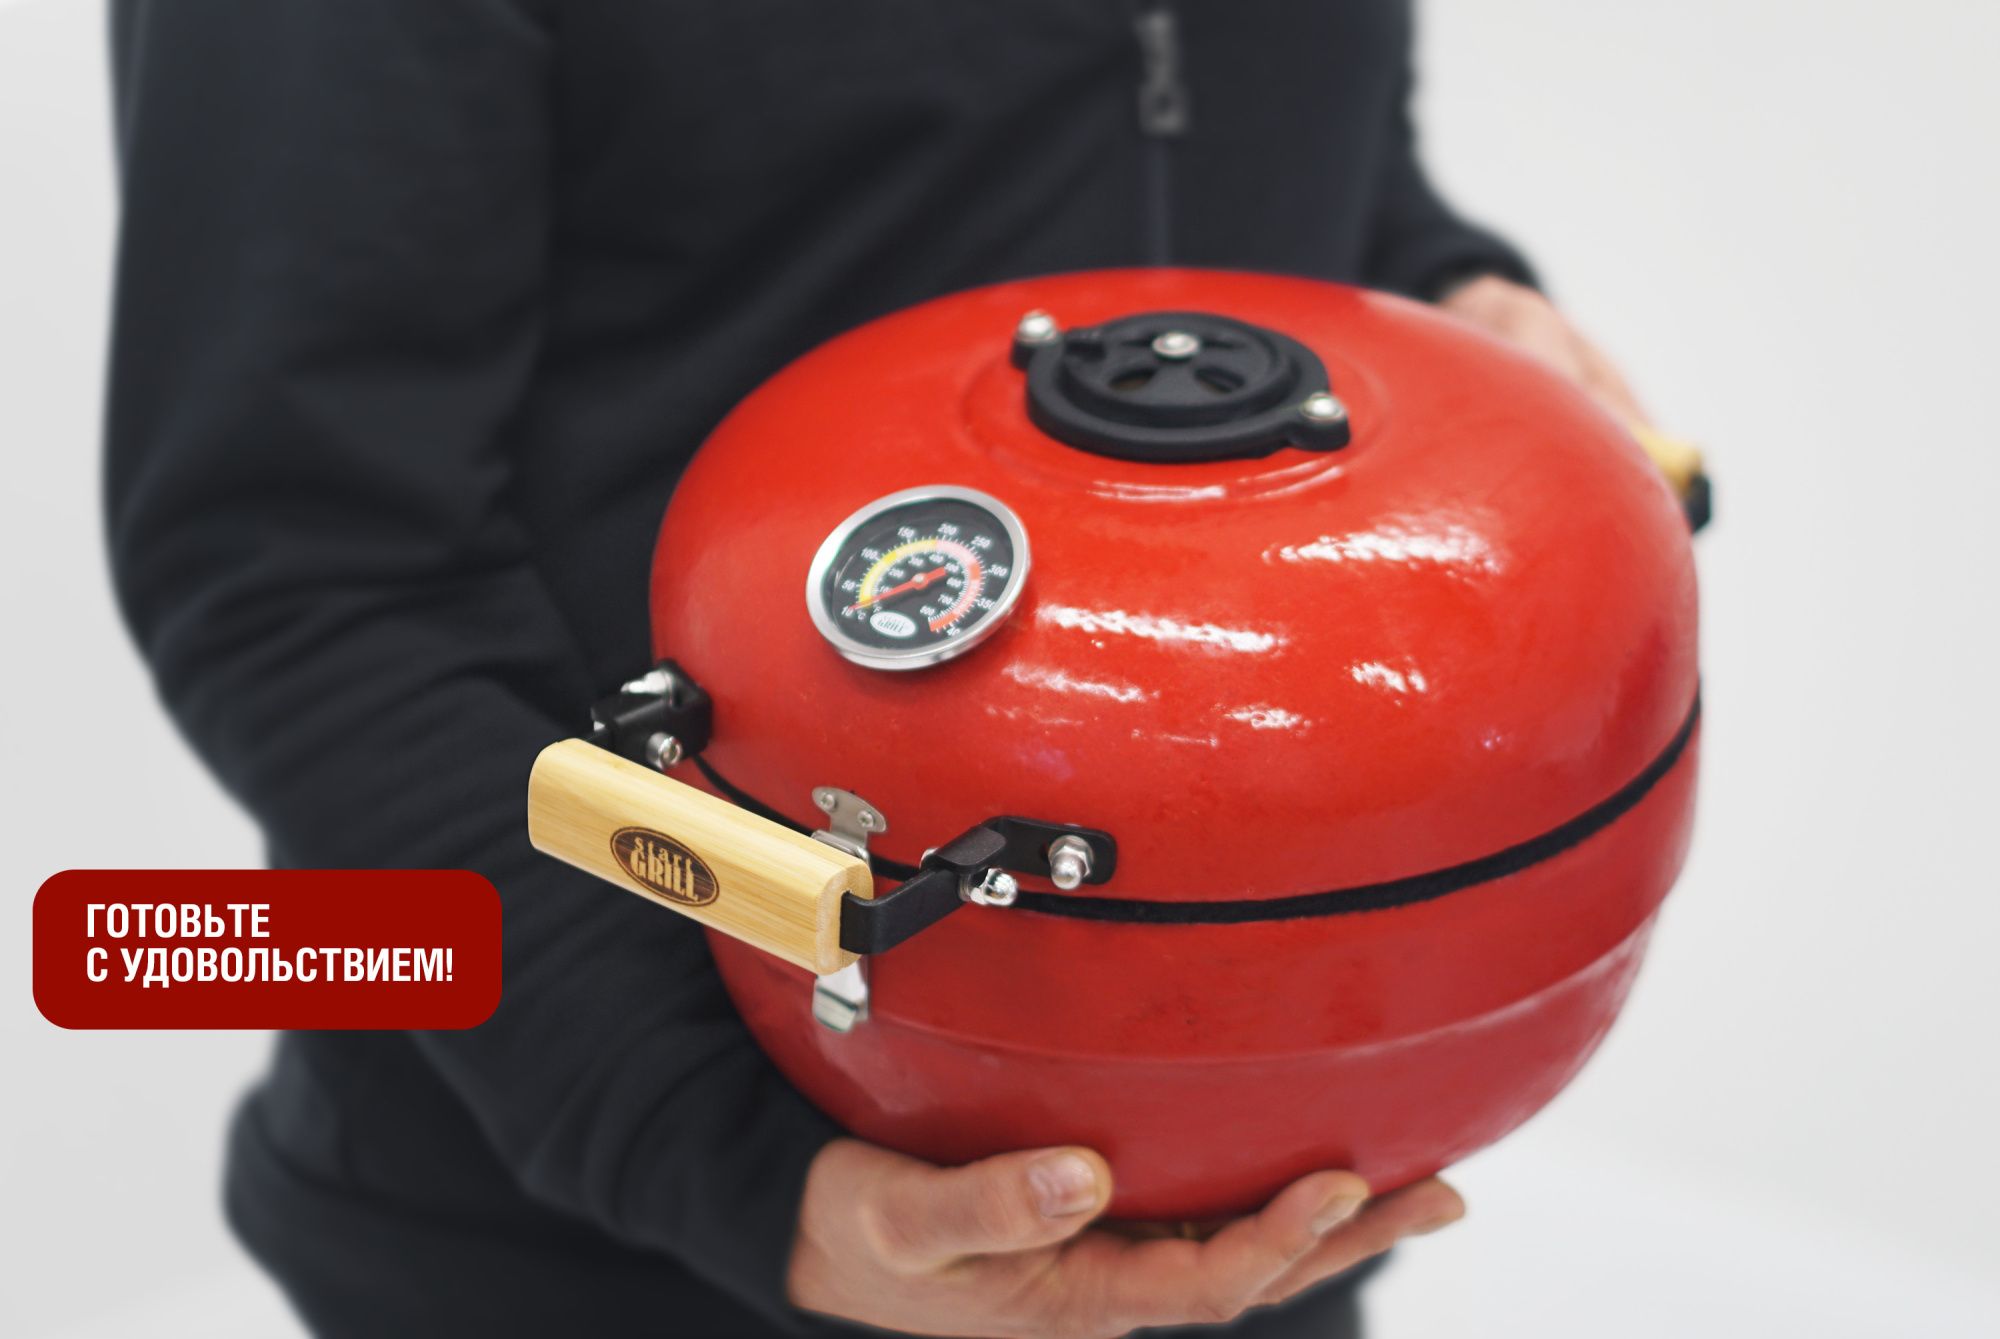 Портативный керамический гриль TRAVELLER 12 дюймов (красный) (30,5 см)